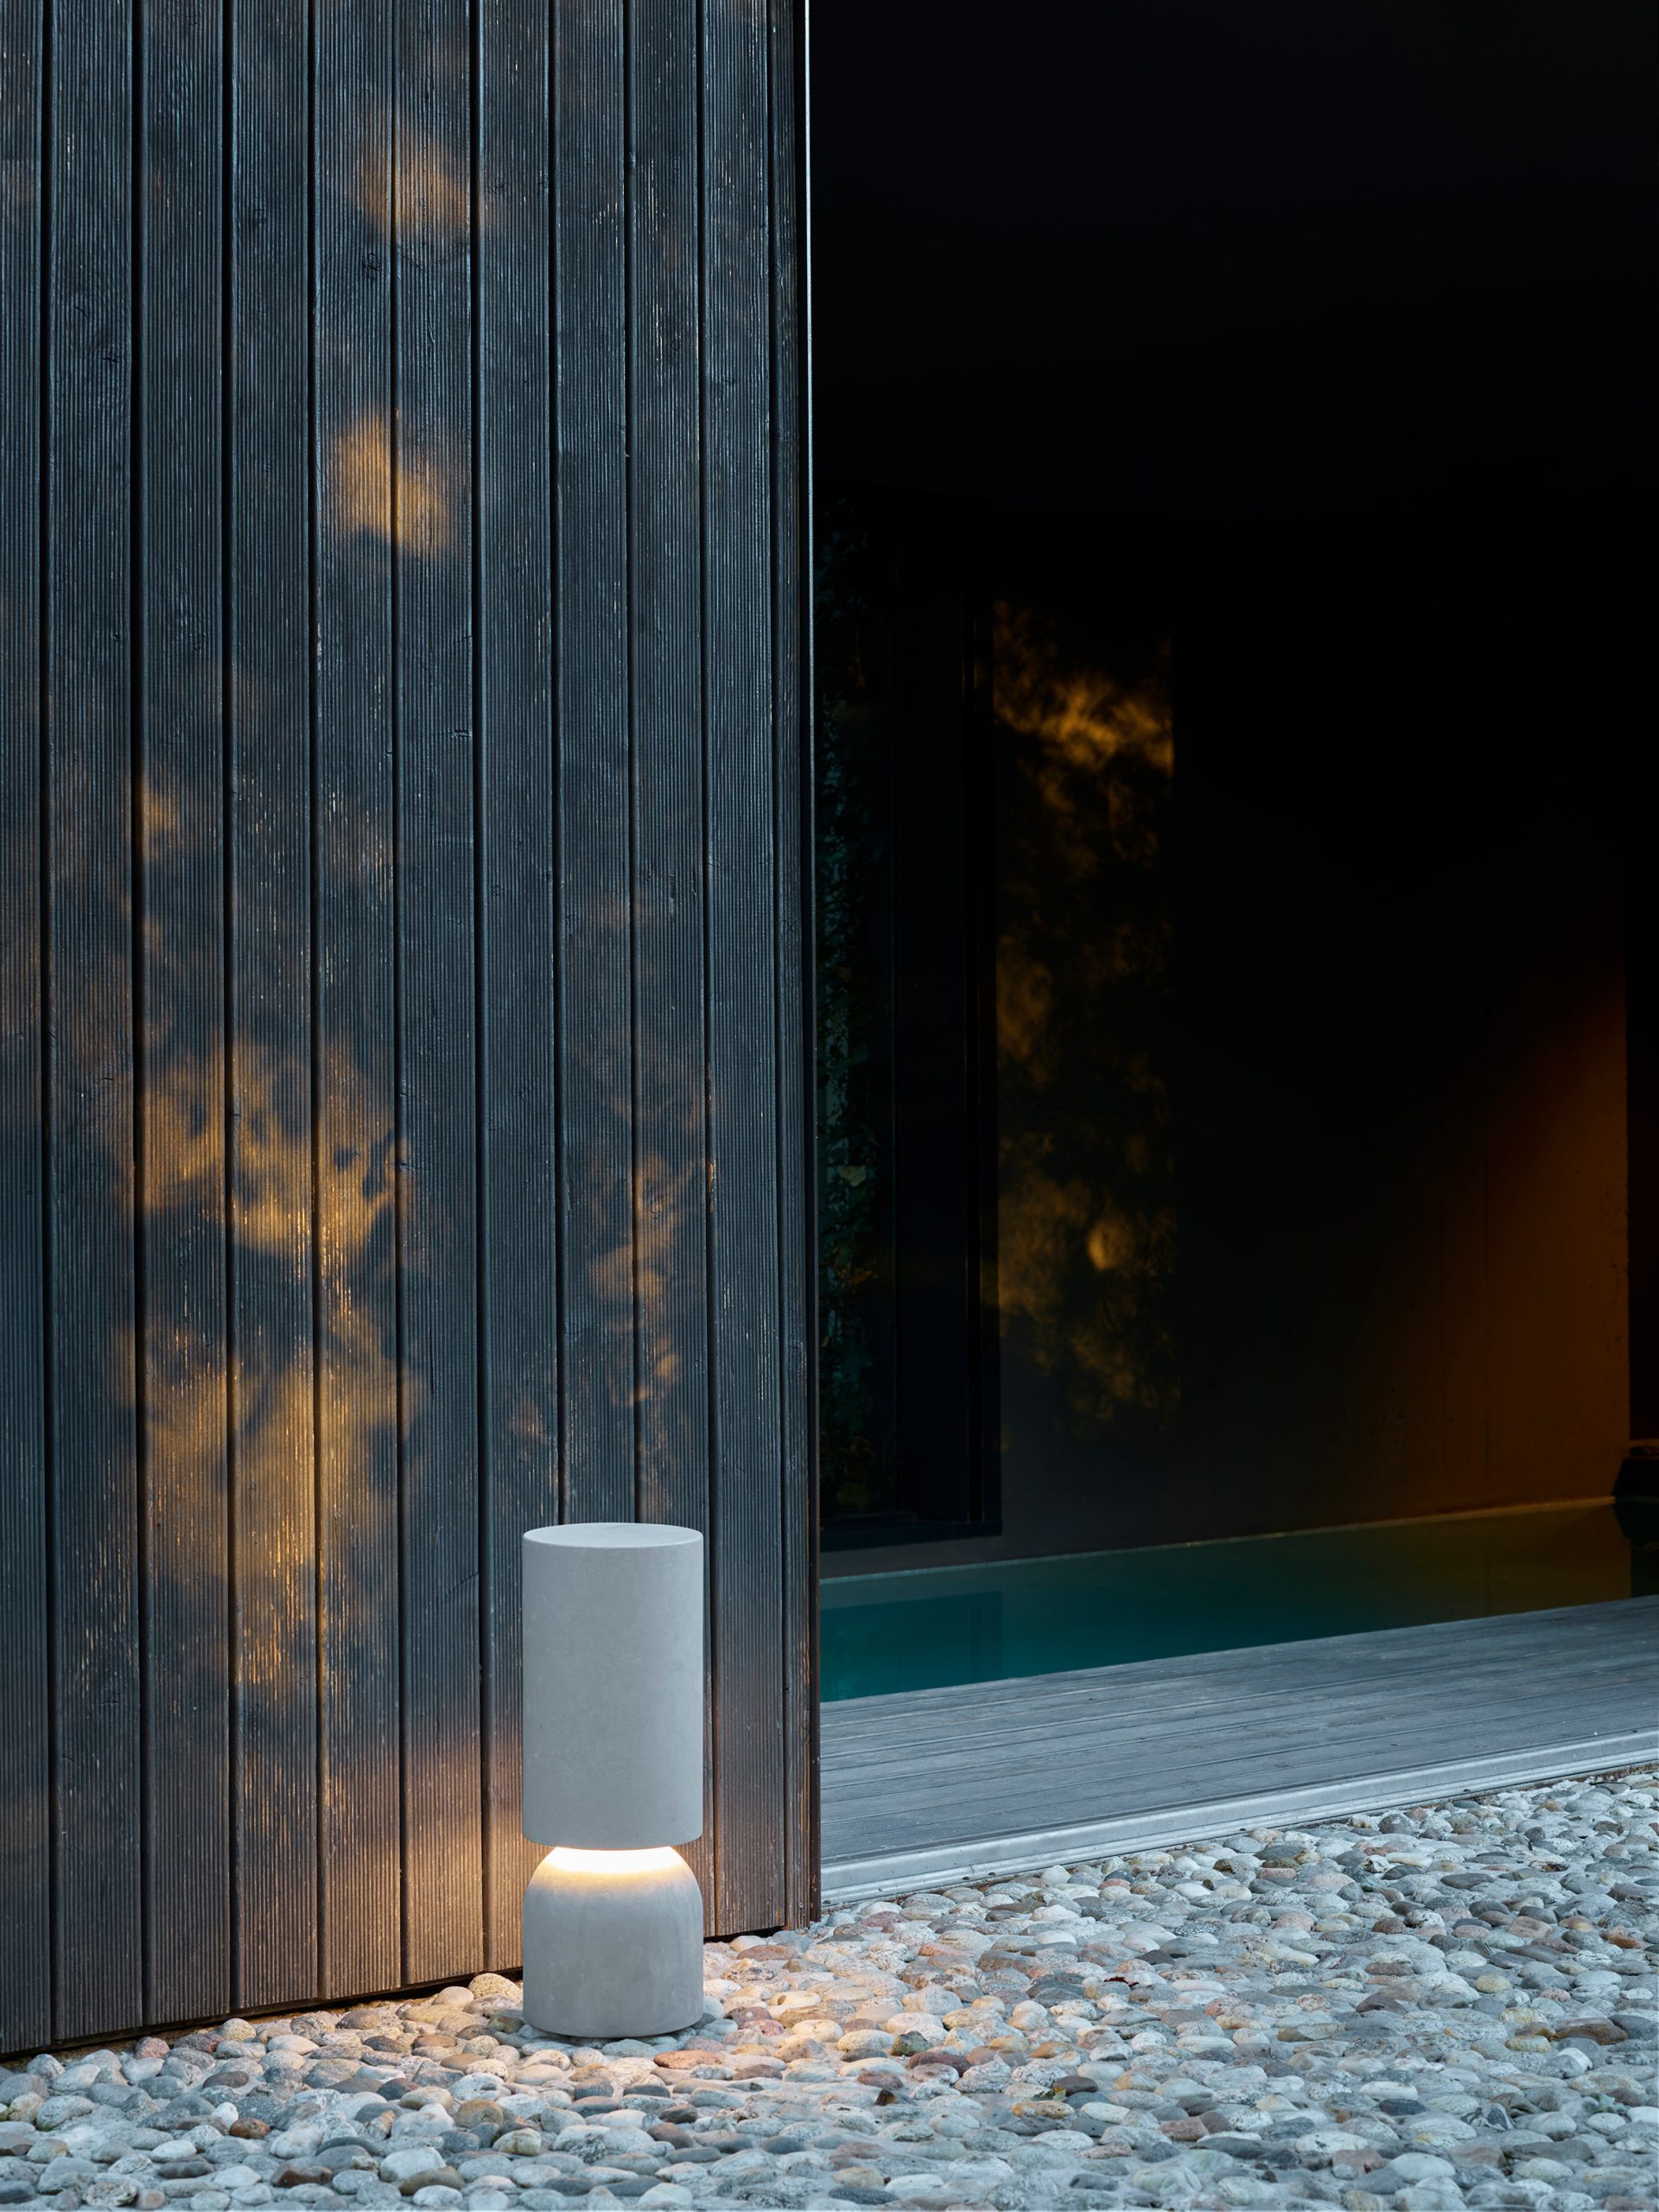 Nui bollard outdoor light by Luceplan